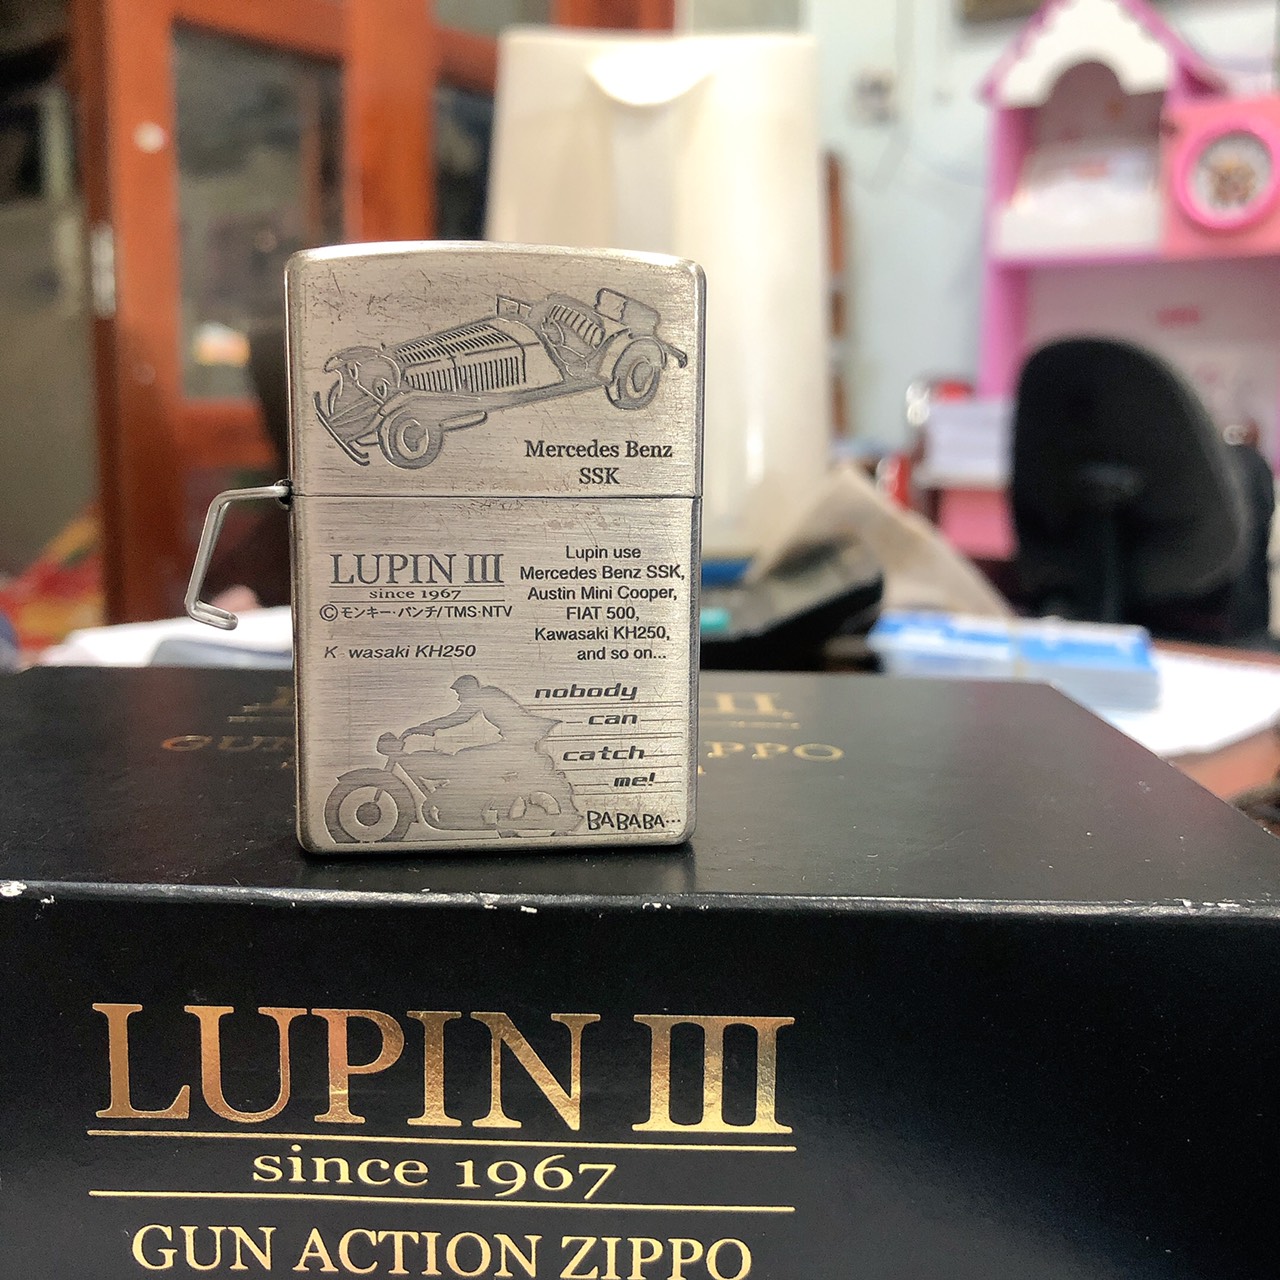 Bật lửa Ziippo Mỹ Lunpin III, lacke bạc, khắc ăn mòn full nắp Mercedes Benz bản giới hạn, kèm phụ kiện